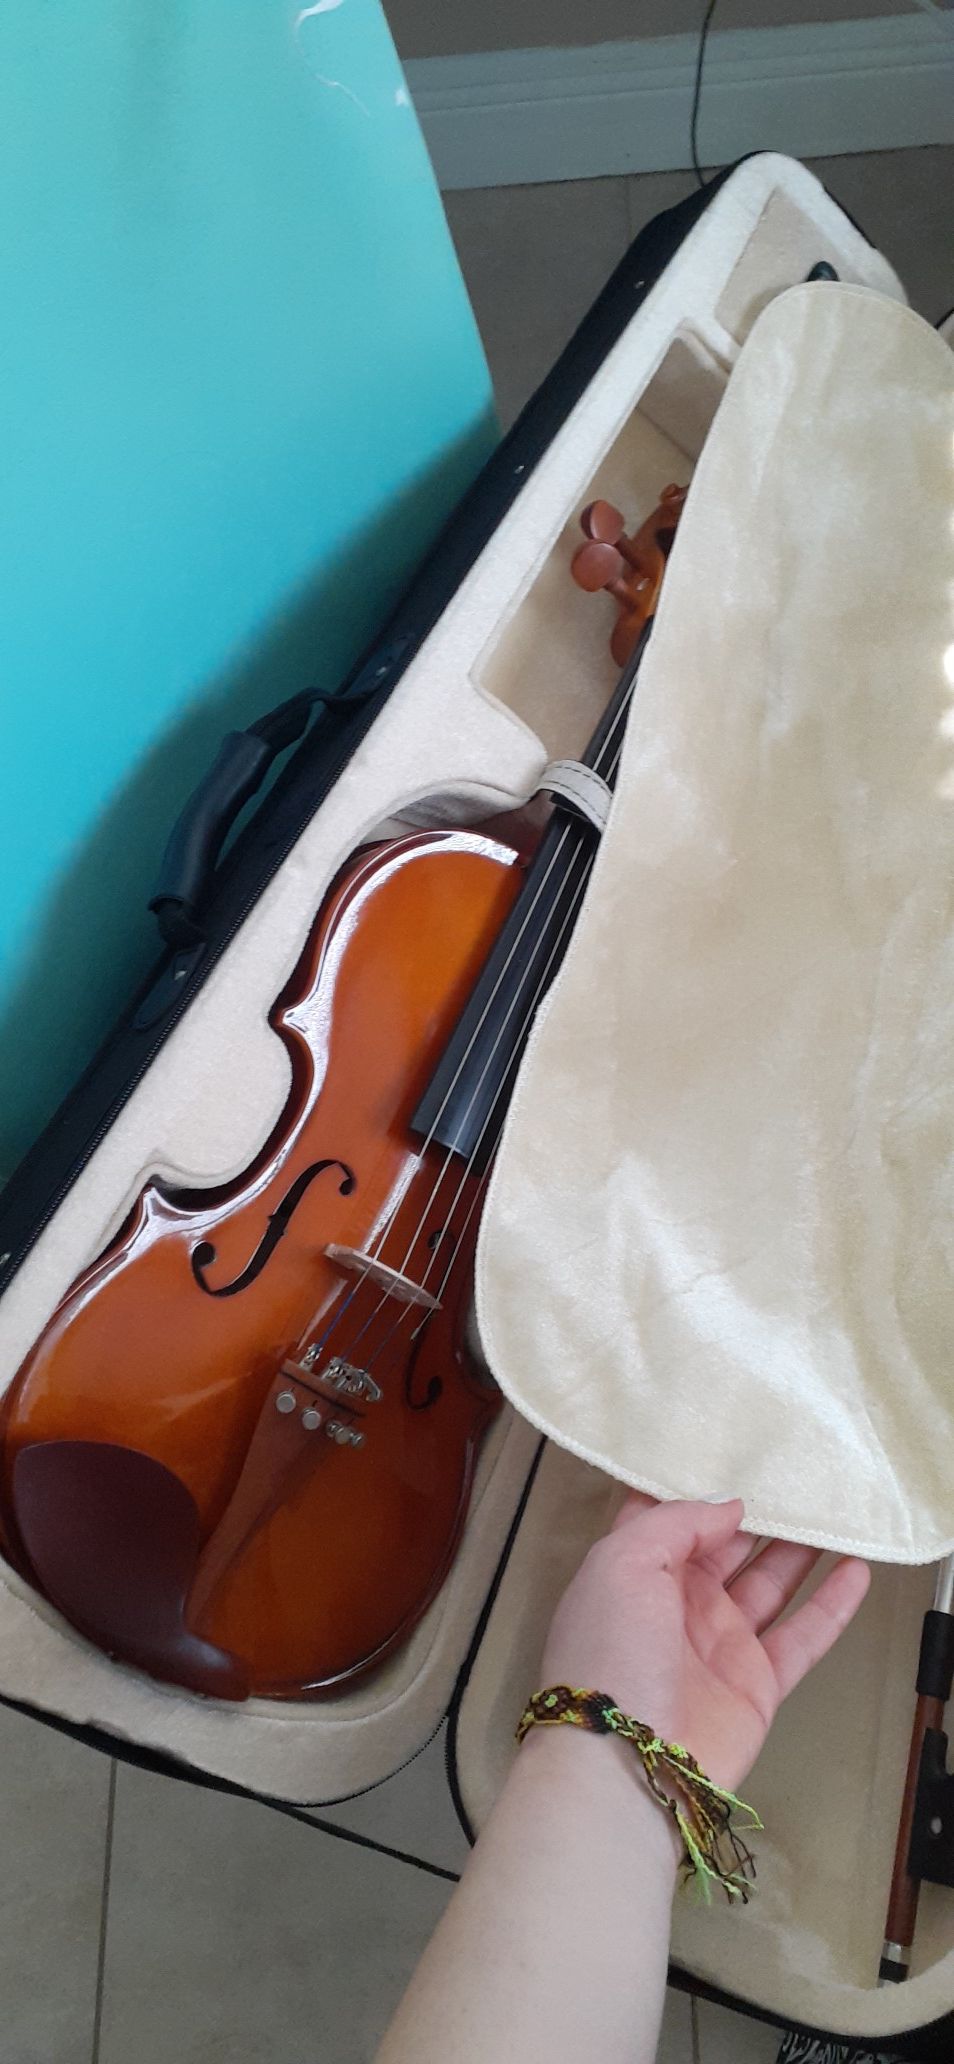 Cecilio 4/4 Violin, brand new